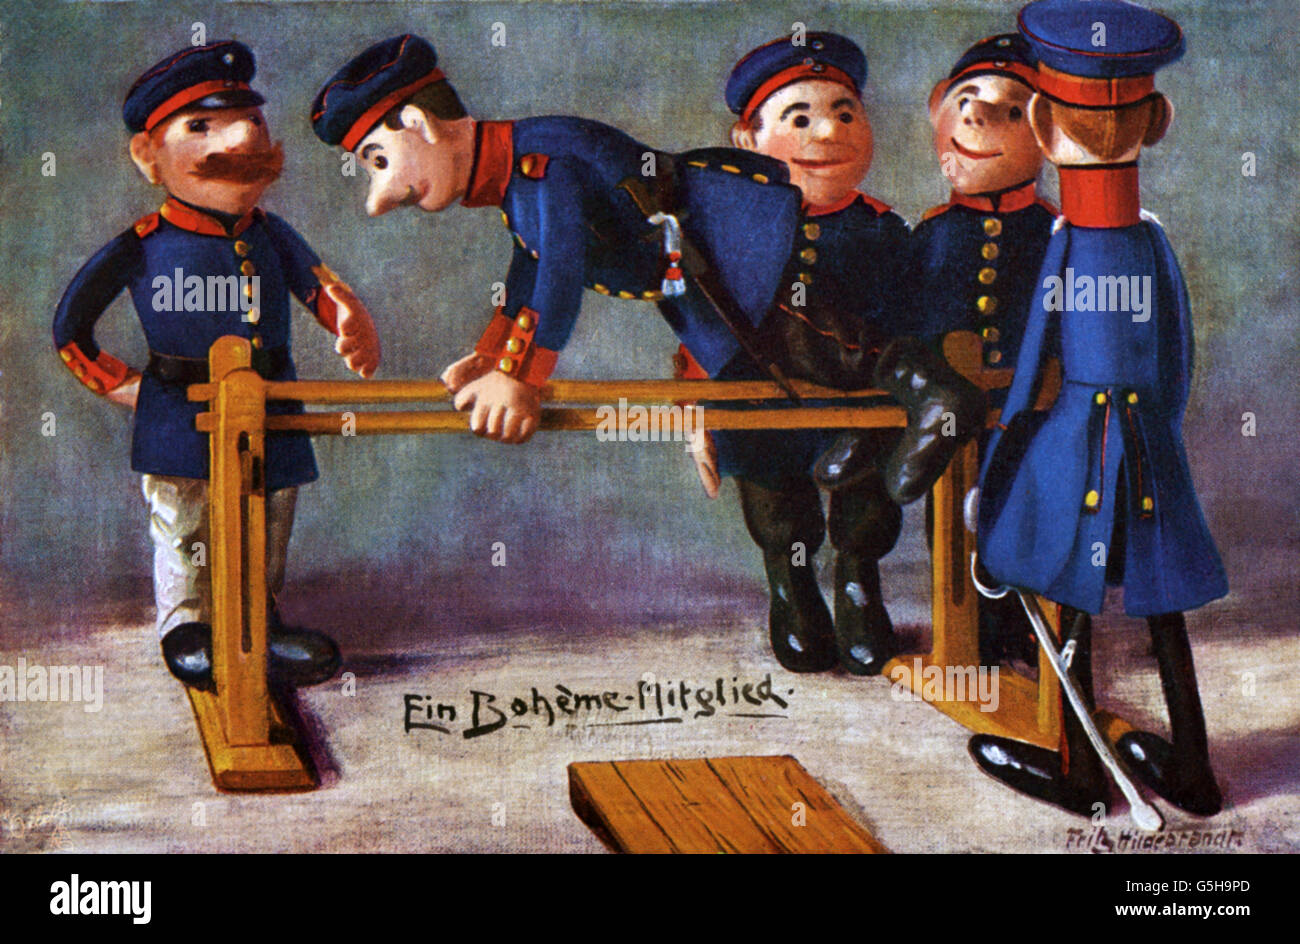 Militär, Deutschland, Karikatur, 'ein Boheme-Mitglied', Soldat auf den parallelen Takten, Zeichnung von Fritz Hildebrandt, Postkarte, um 1910, Zusatzrechte-Clearences-nicht vorhanden Stockfoto